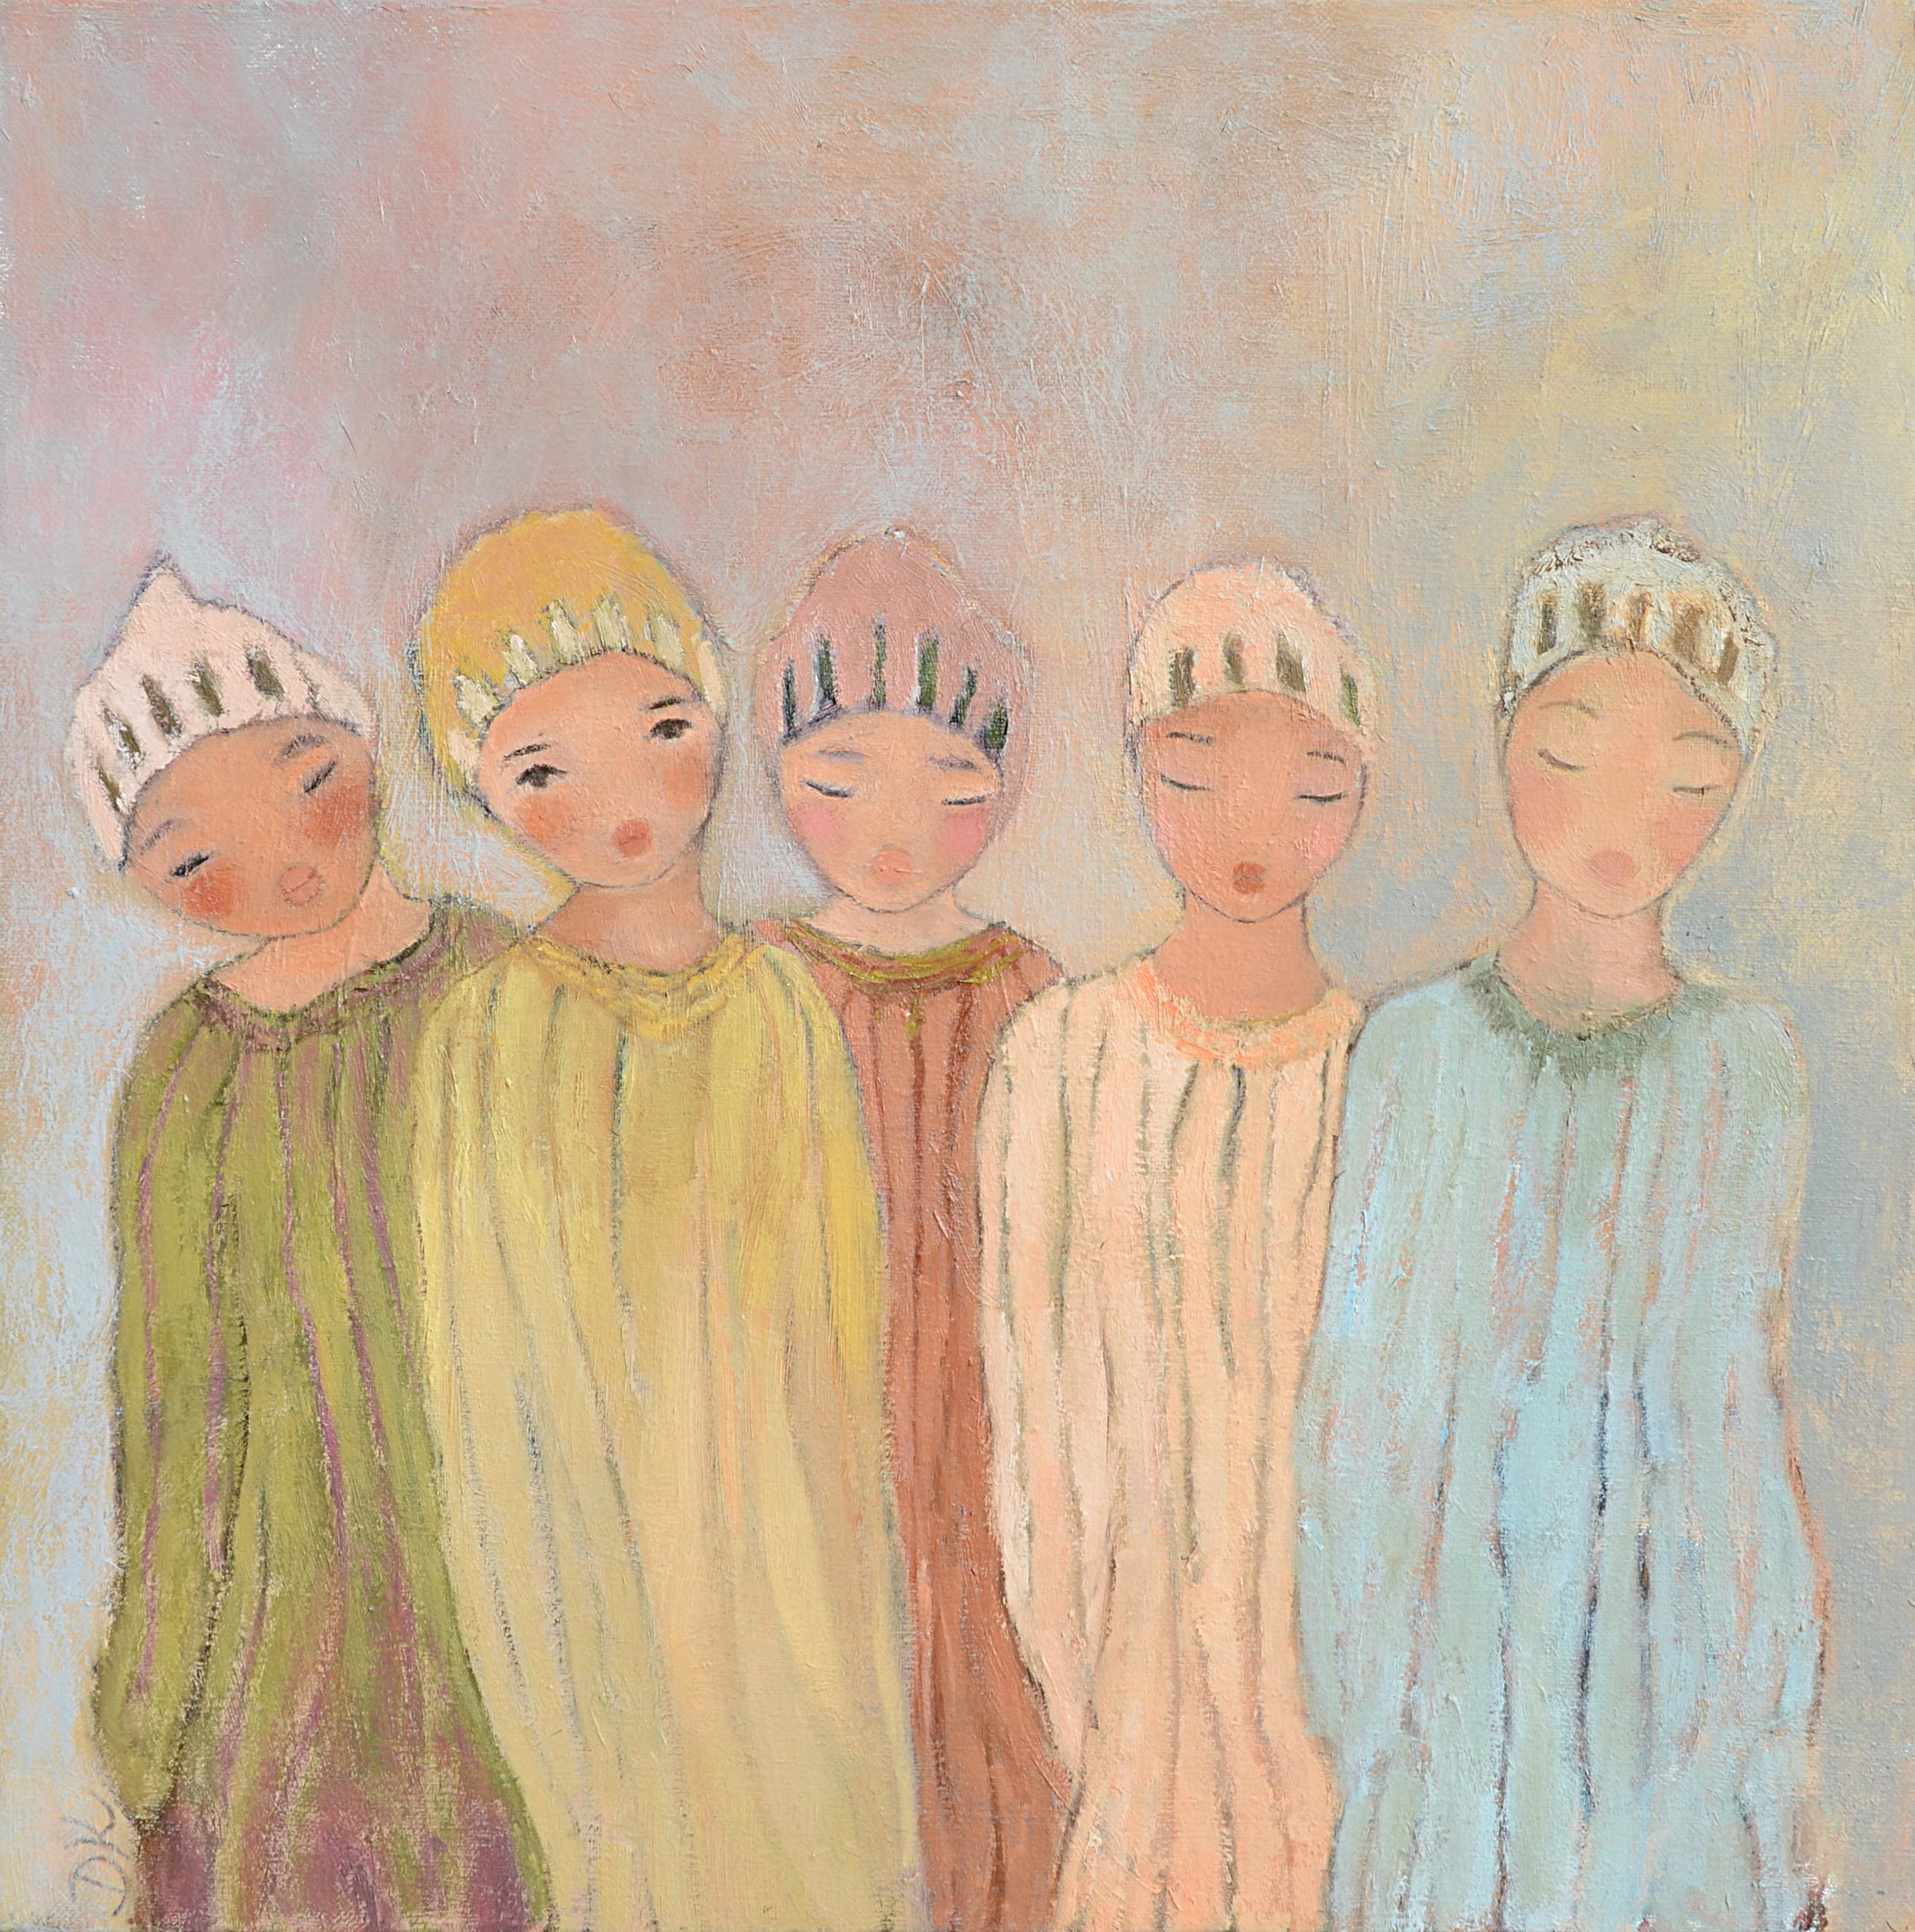 Dieses Kunstwerk zeigt fünf Kinder in traditioneller Kleidung (marokkanisch ?).  Vier von ihnen haben geschlossene Augen, nur eines hat offene Augen und schaut den Betrachter direkt an, was ein seltsames Gefühl der Kommunikation zwischen dem Bild